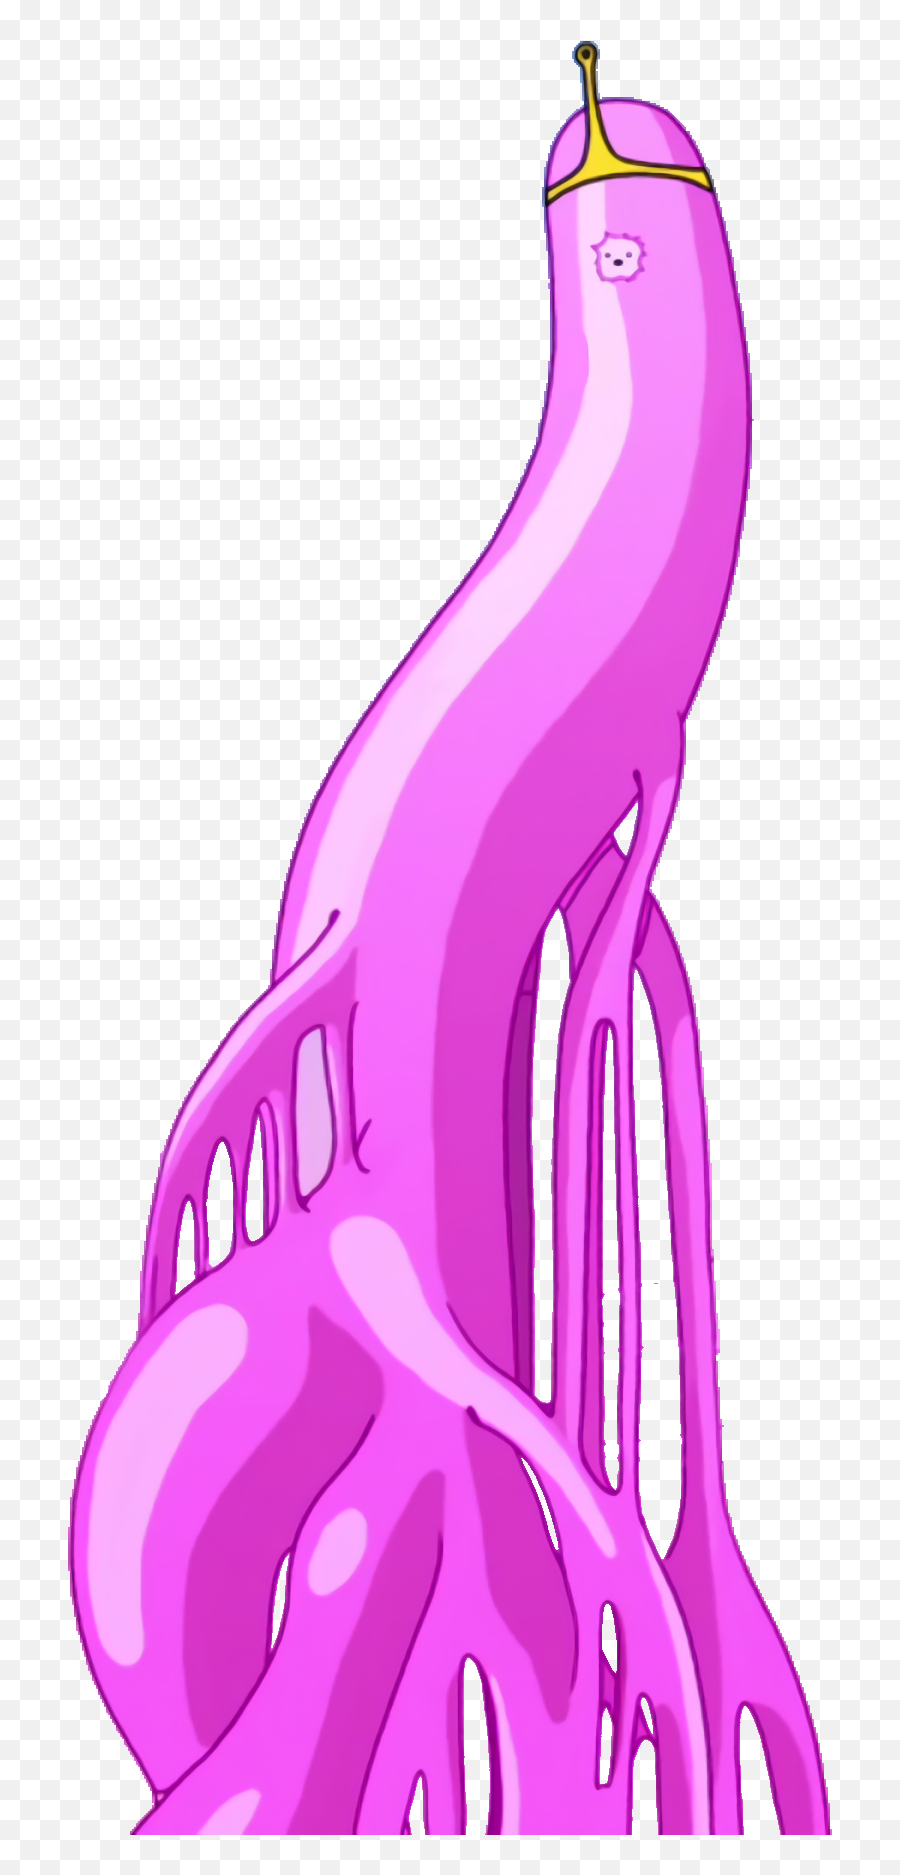 Princess Bubblegum - Adventure Time Elements Princess Bubblegum Png,Princess Bubblegum Png